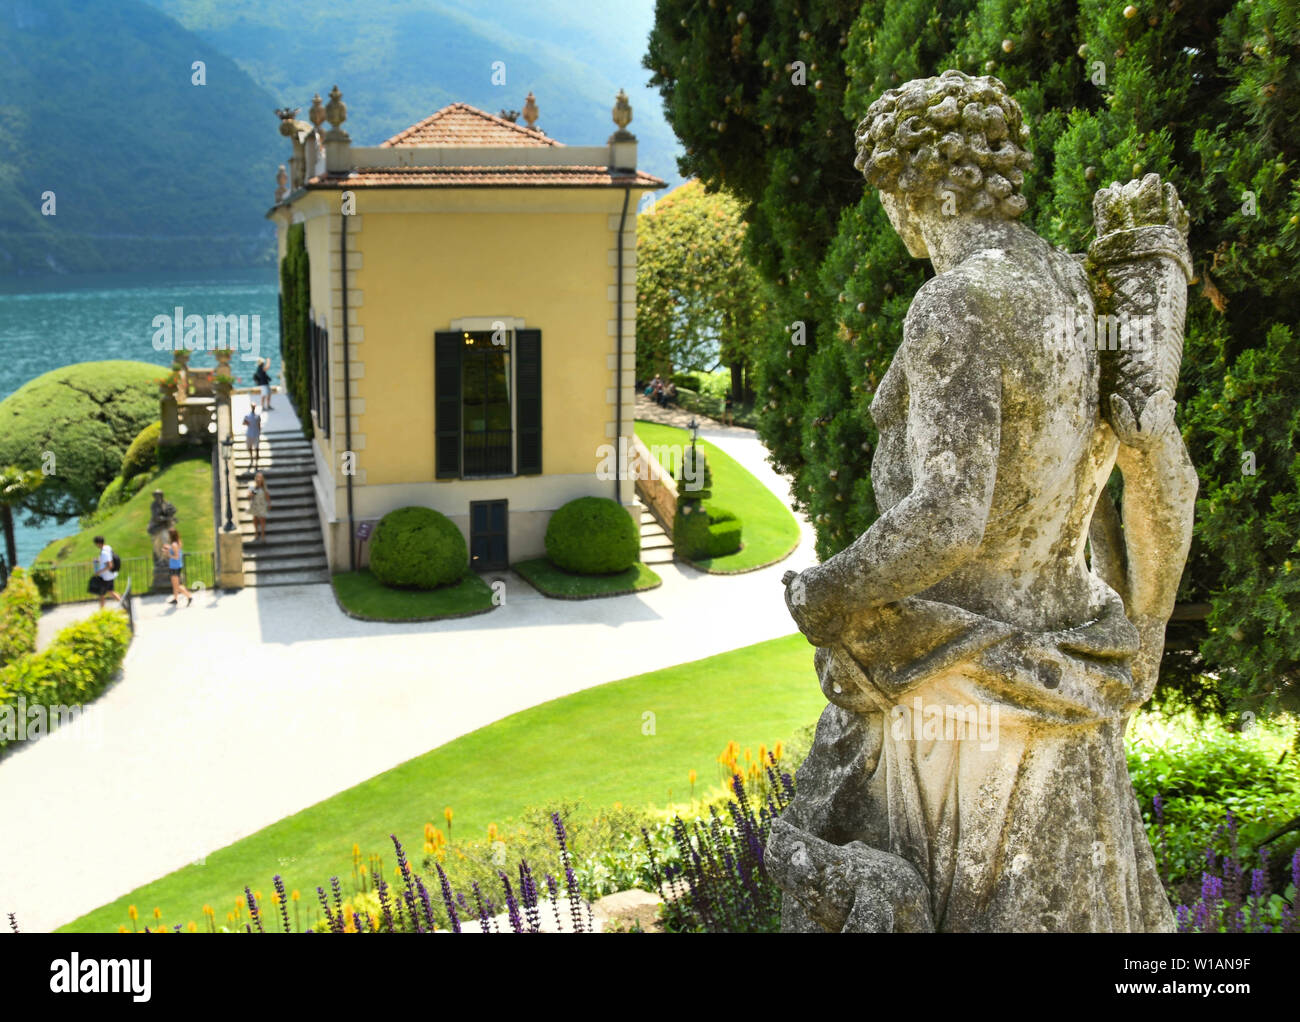 LENNO, LAGO DI COMO, Italia - Giugno 2019: statua di pietra che guardano ai giardini della Villa del Balbianello a Lenno sul Lago di Como. Foto Stock